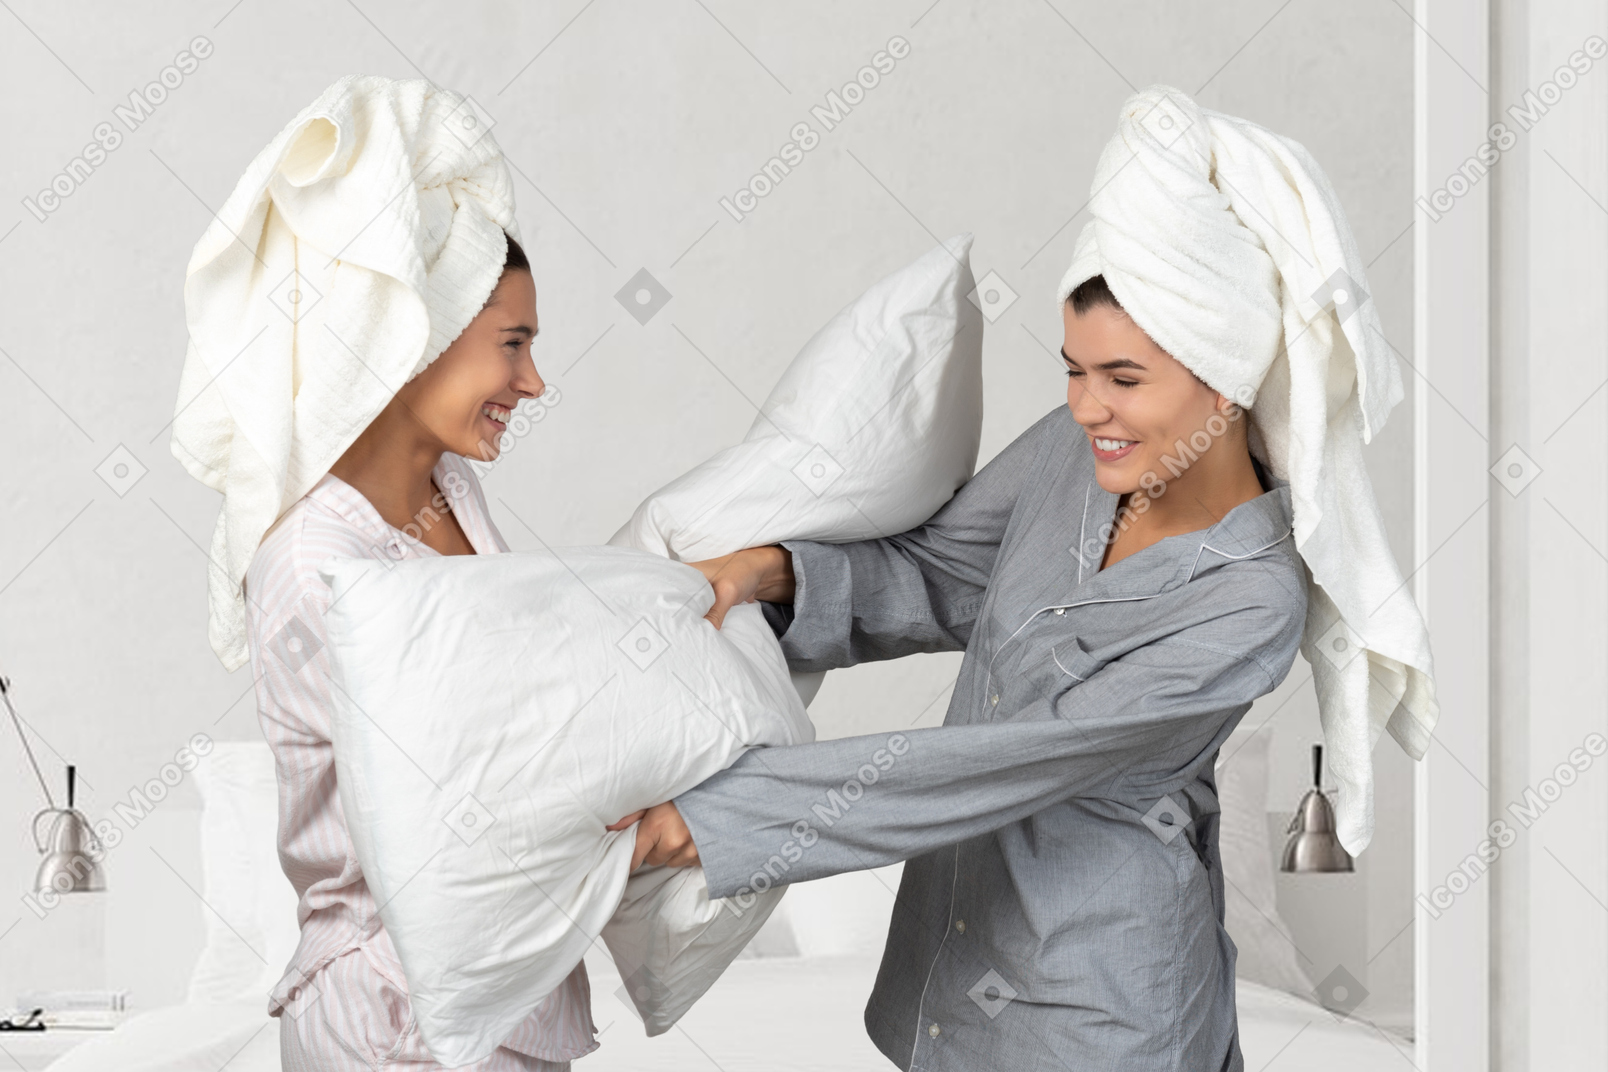 枕で喧嘩する 2 人の女性